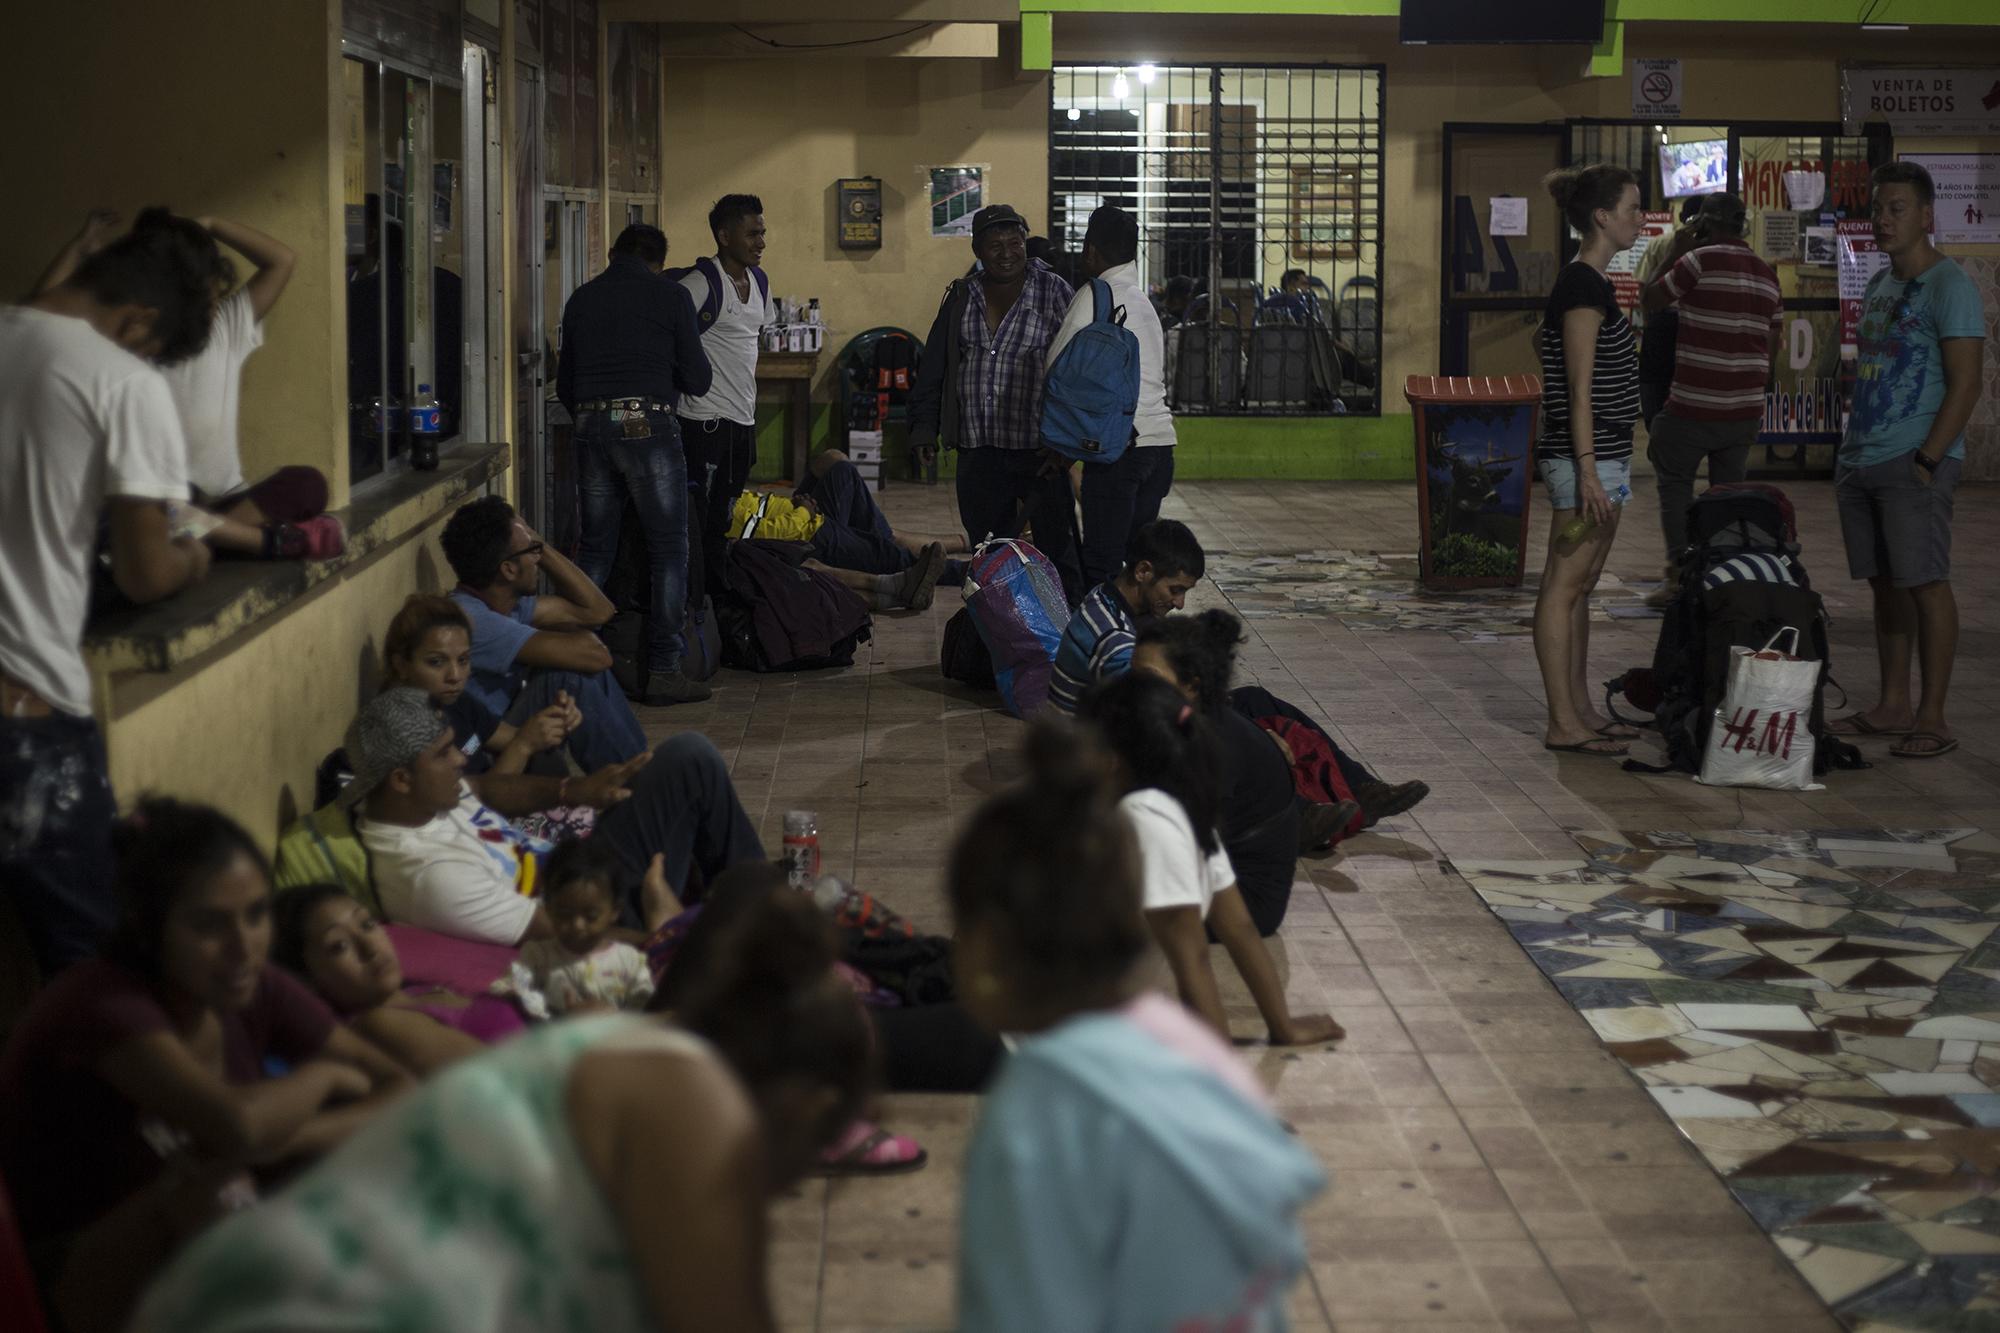 En la estación de autobuses del municipio de Santa Elena, en Petén, convergen visitantes europeos ávidos de recorrer los destinos turísticos de la zona y migrantes centroamericanos en su ruta hacia el norte. Debido al colapso de los albergues, decenas de migrantes tuvieron que dormir en el piso de la estación.